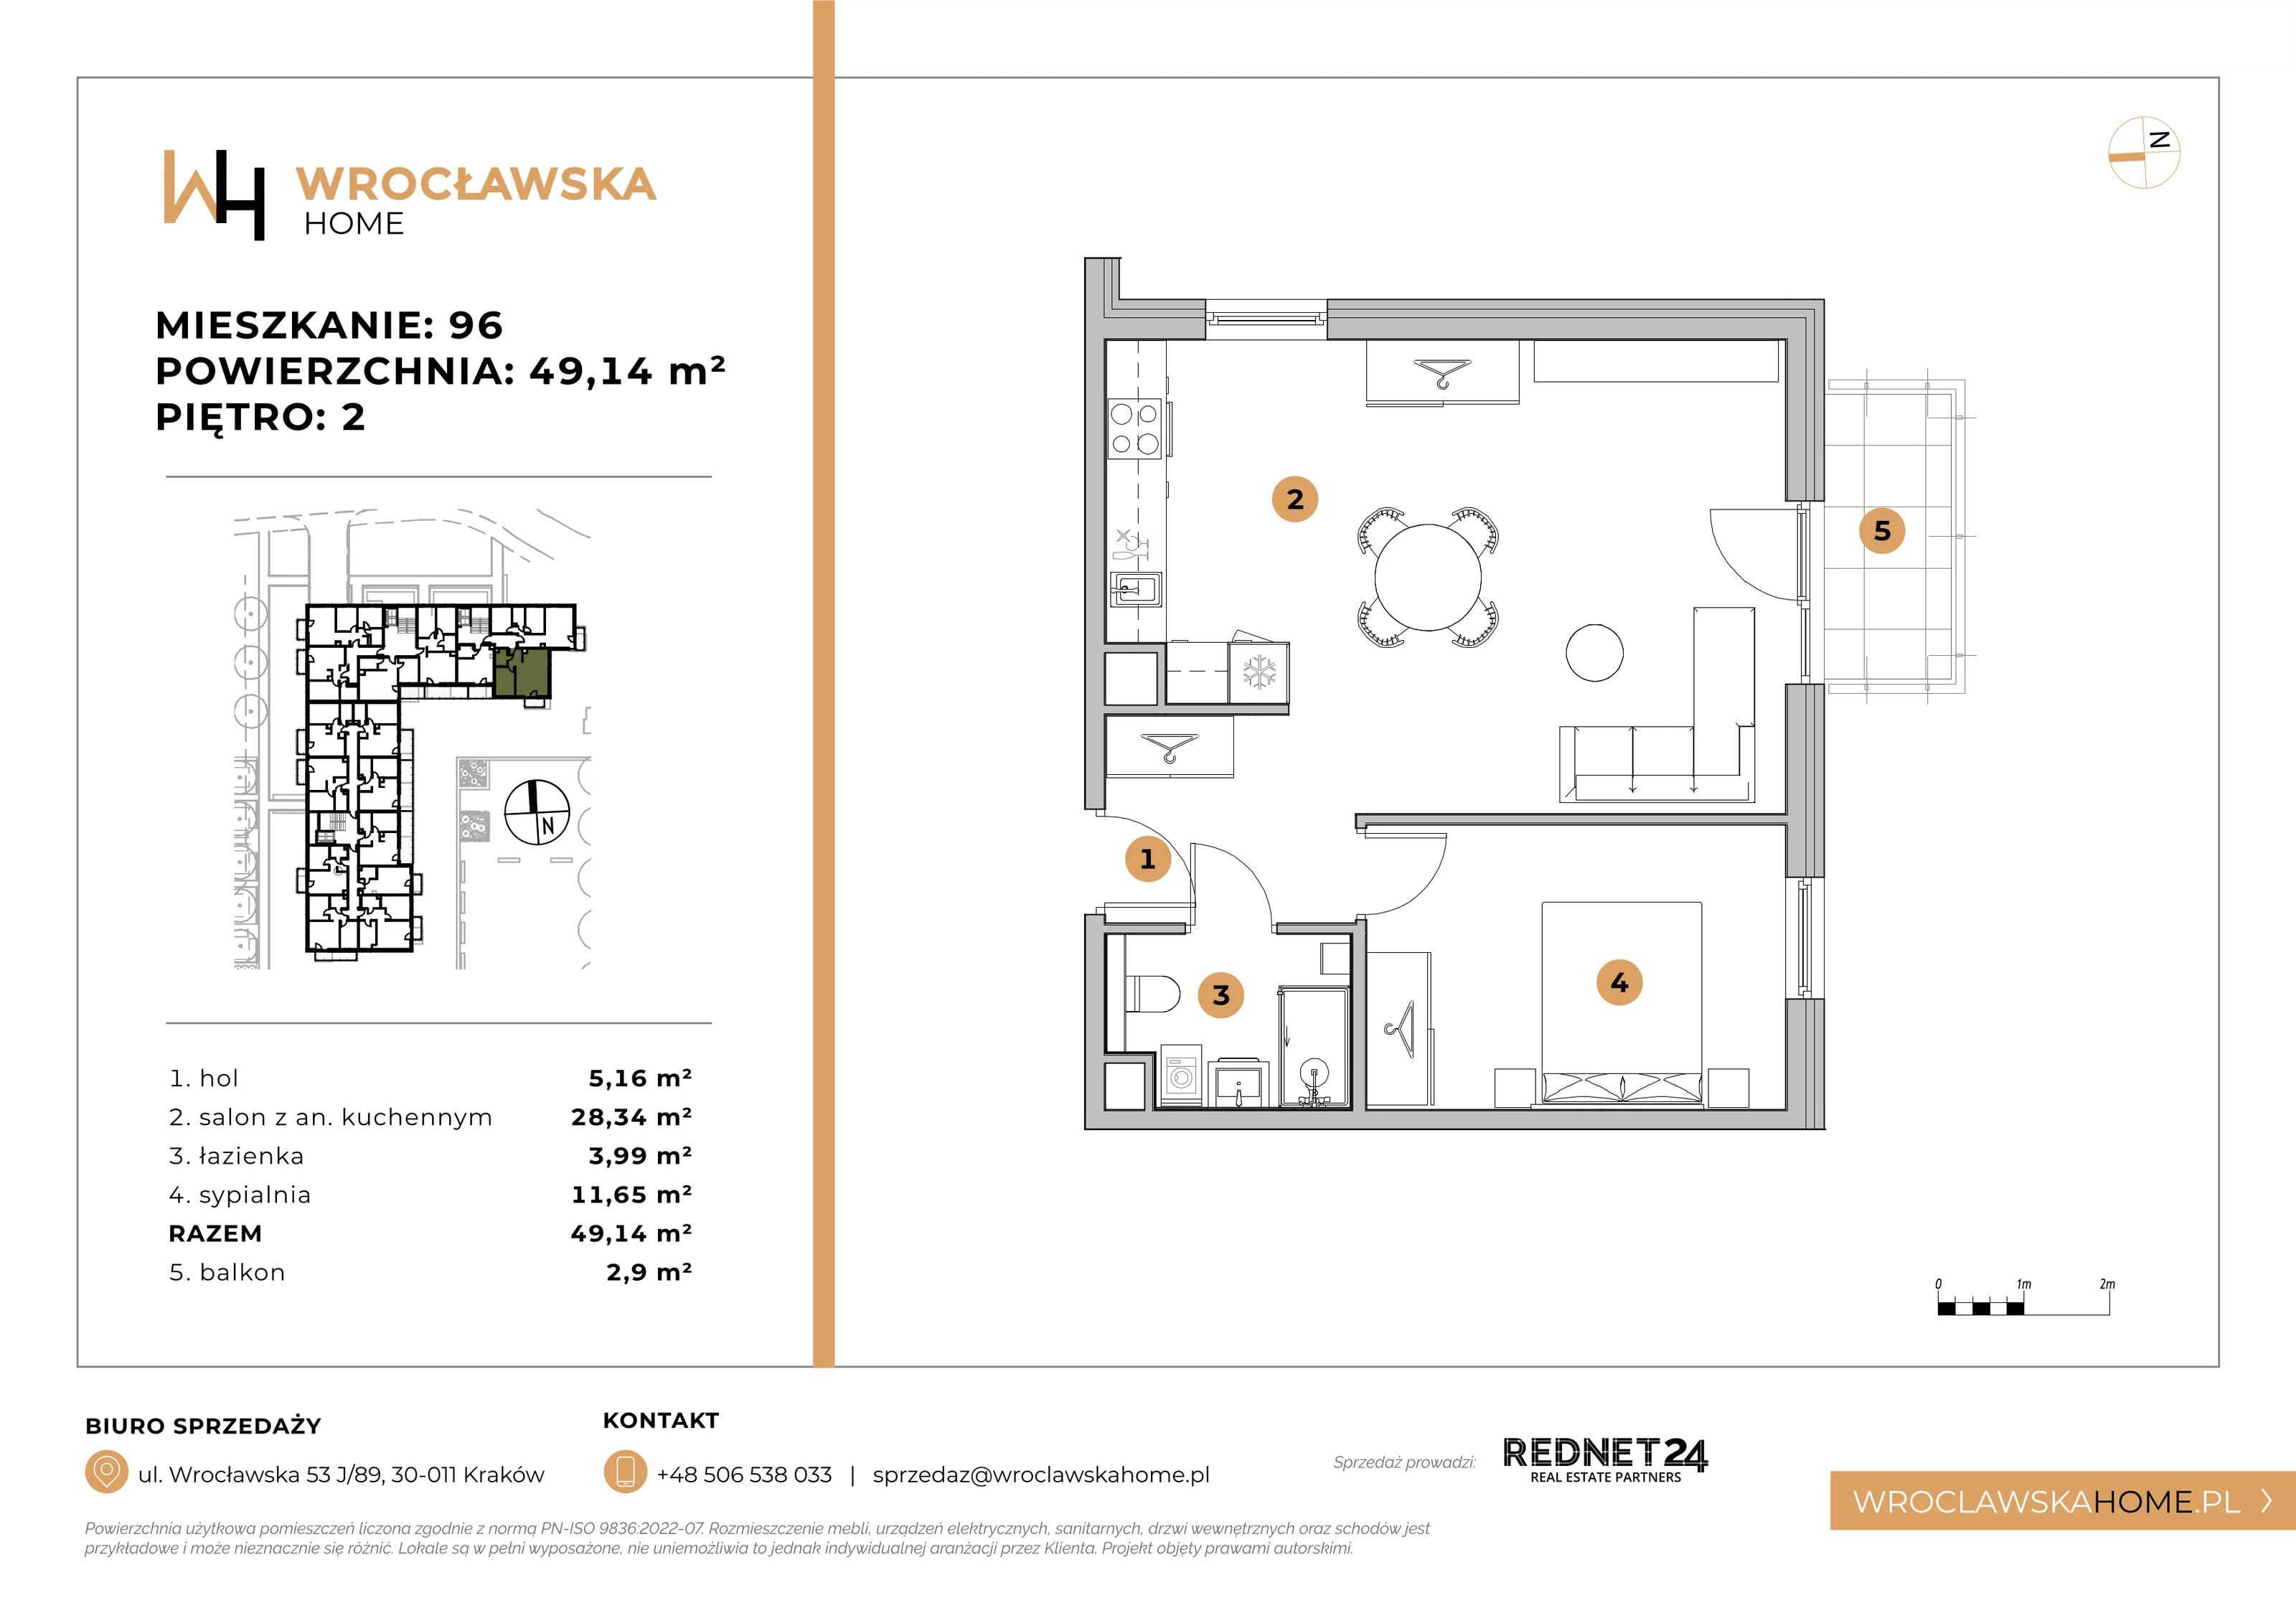 Mieszkanie 49,14 m², piętro 2, oferta nr 96, Wrocławska HOME, Kraków, Krowodrza, ul. Wrocławska 53J	